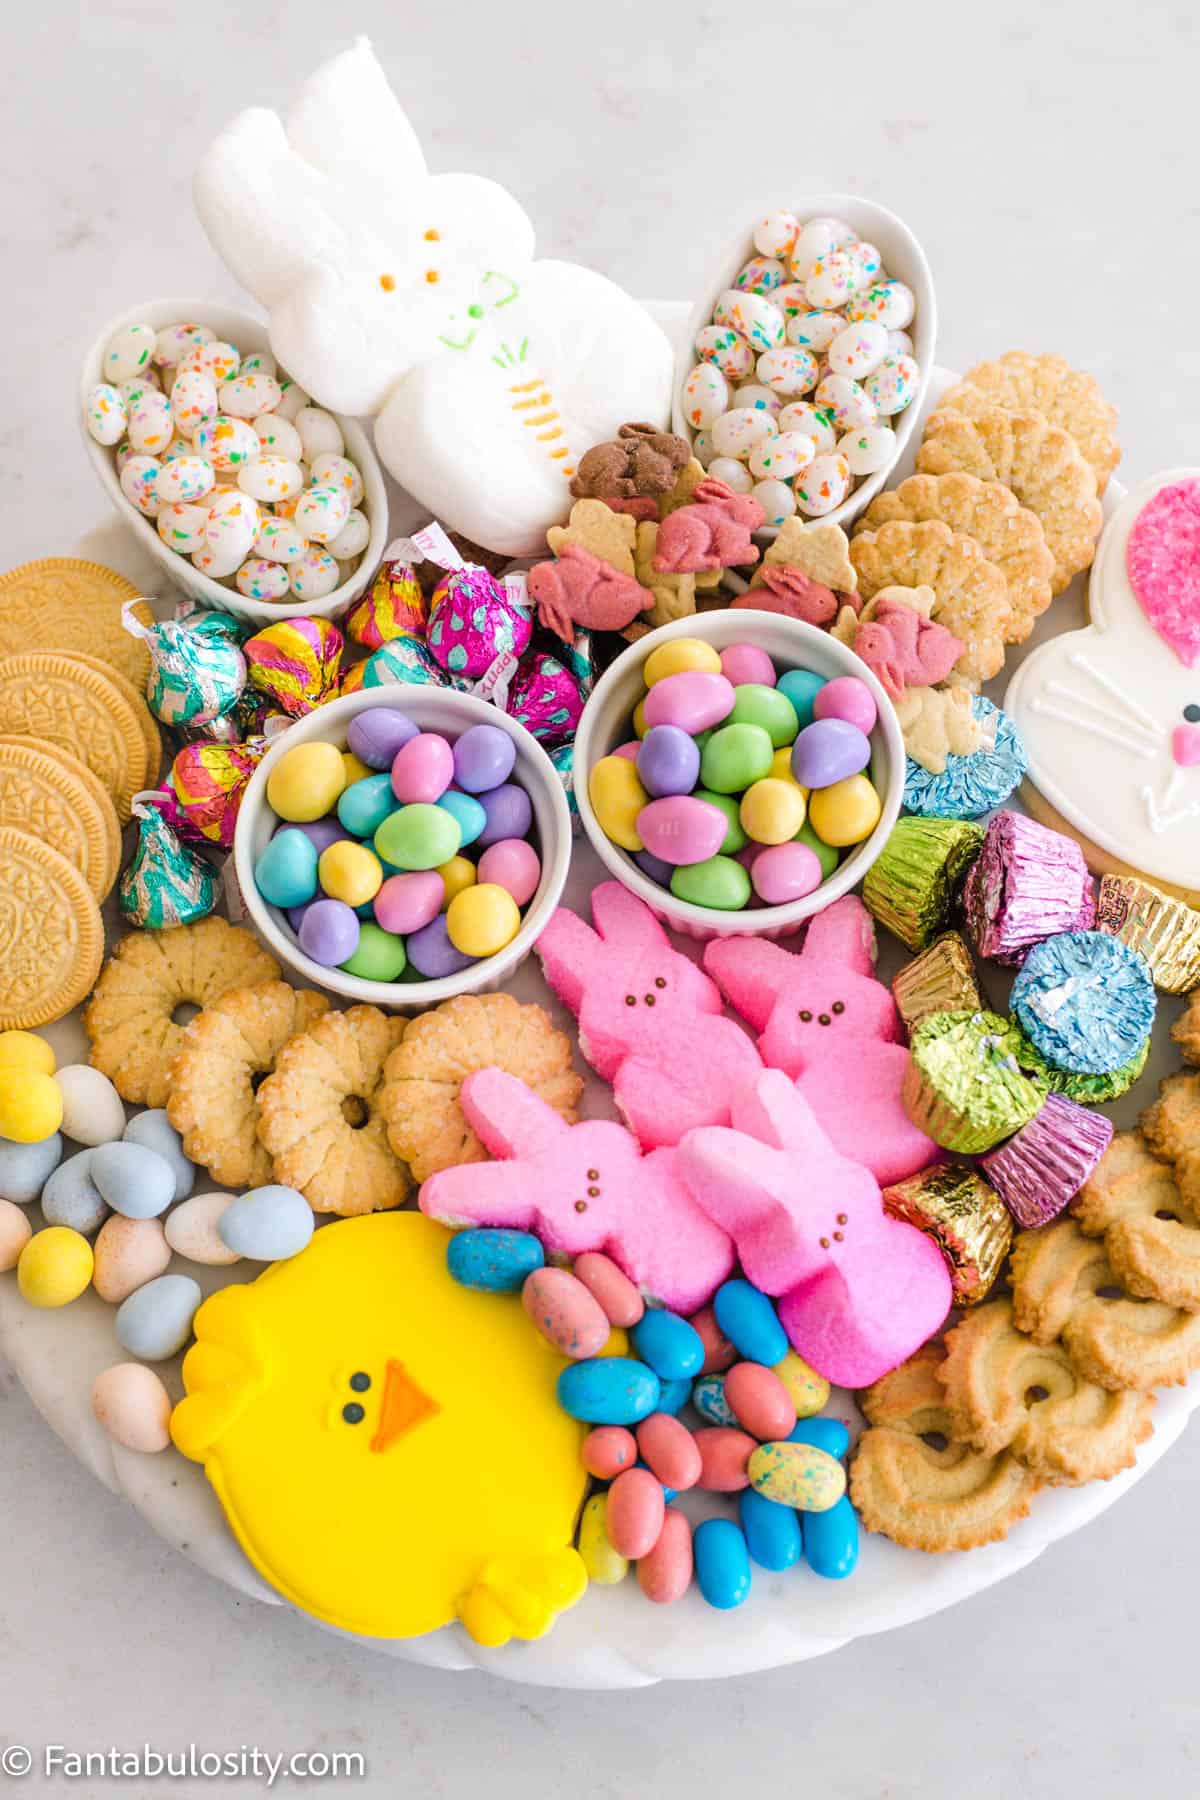 Full platter of Easter desserts